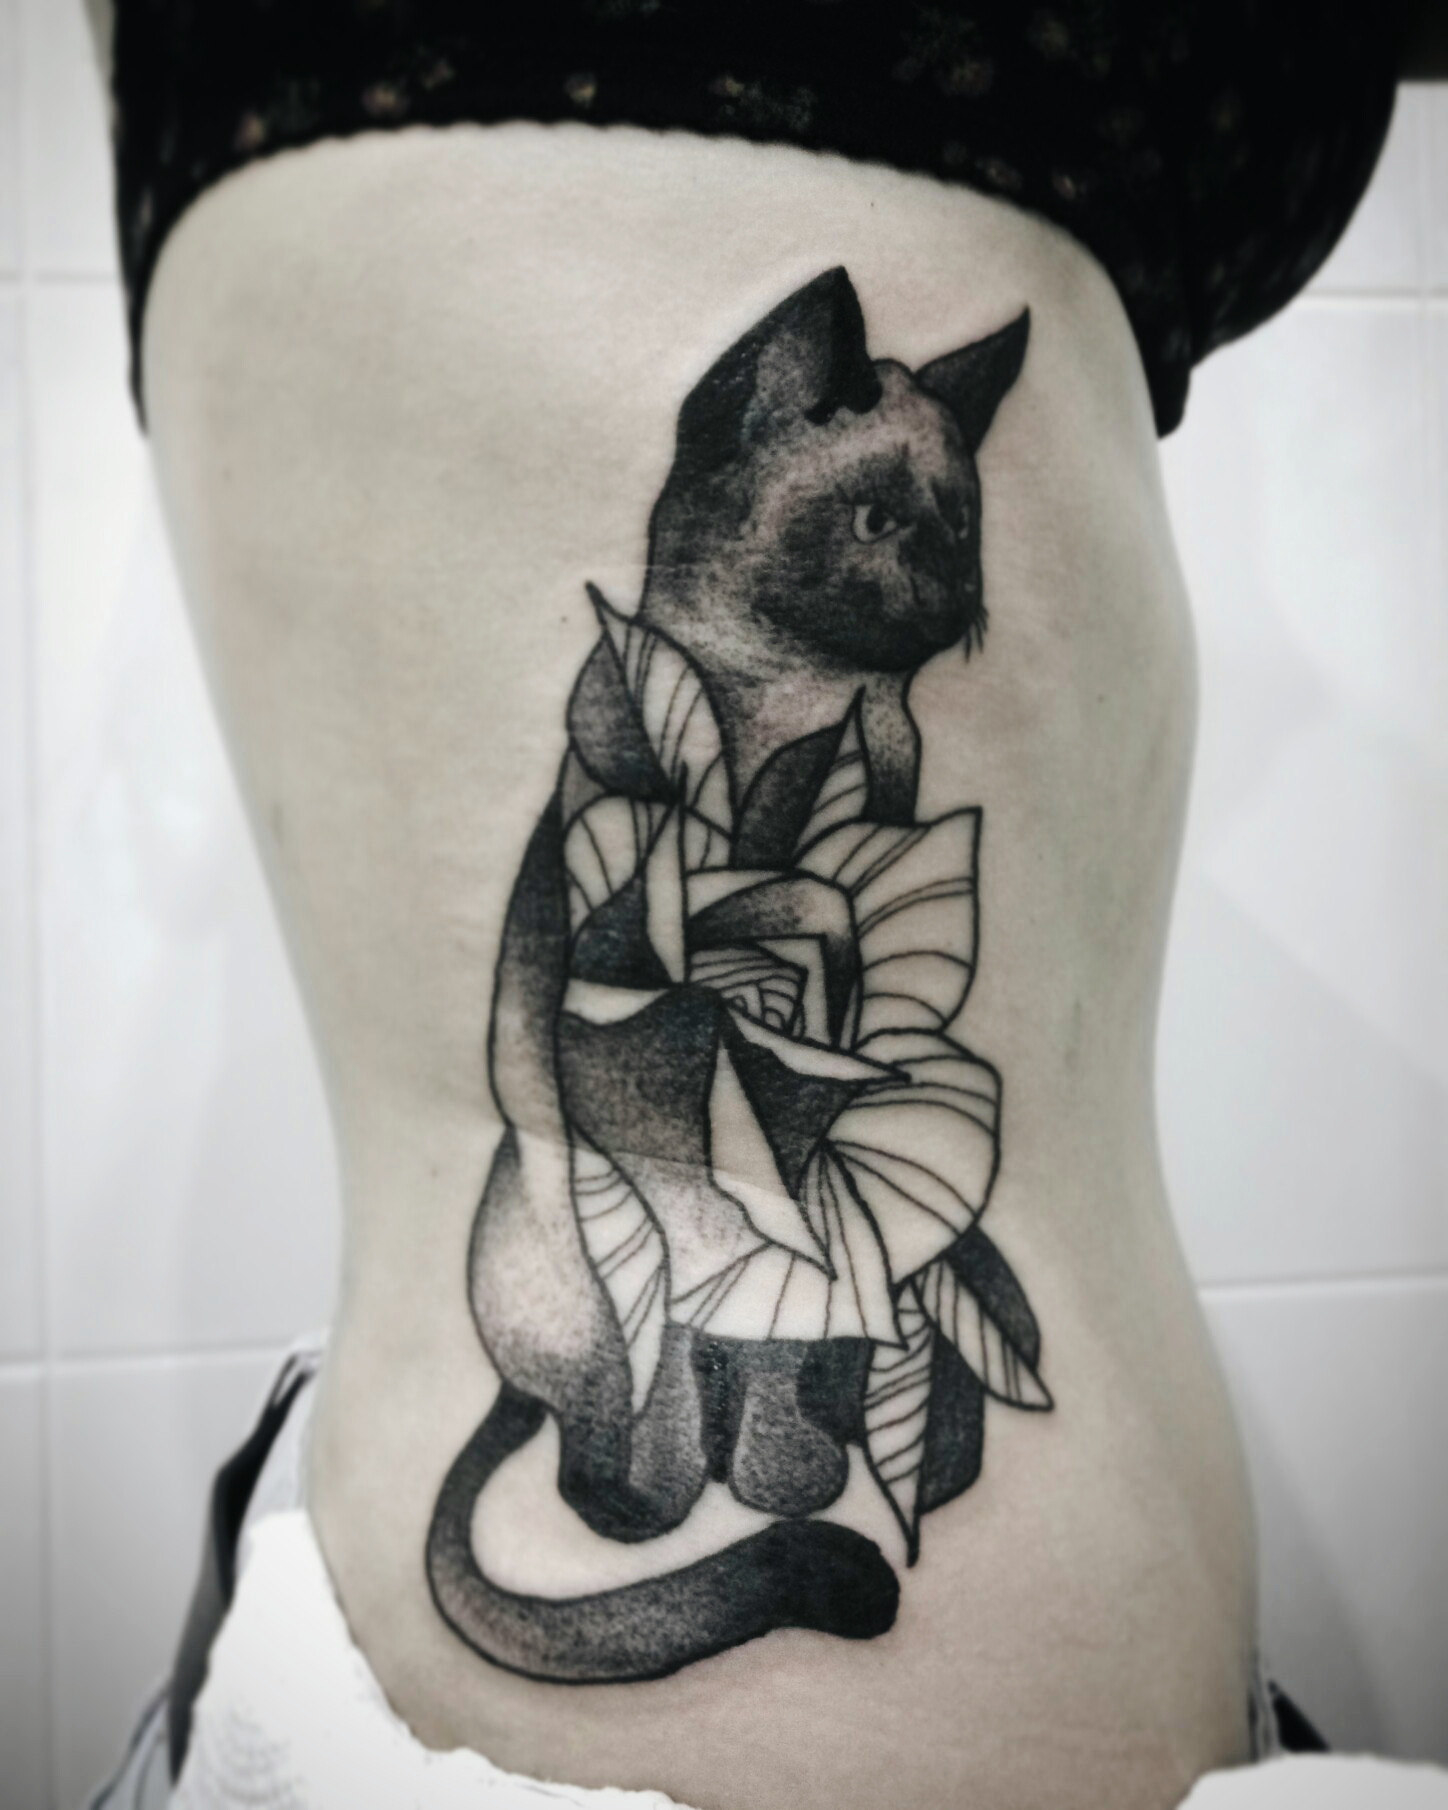 A cat tattooed on someone&#x27;s torso